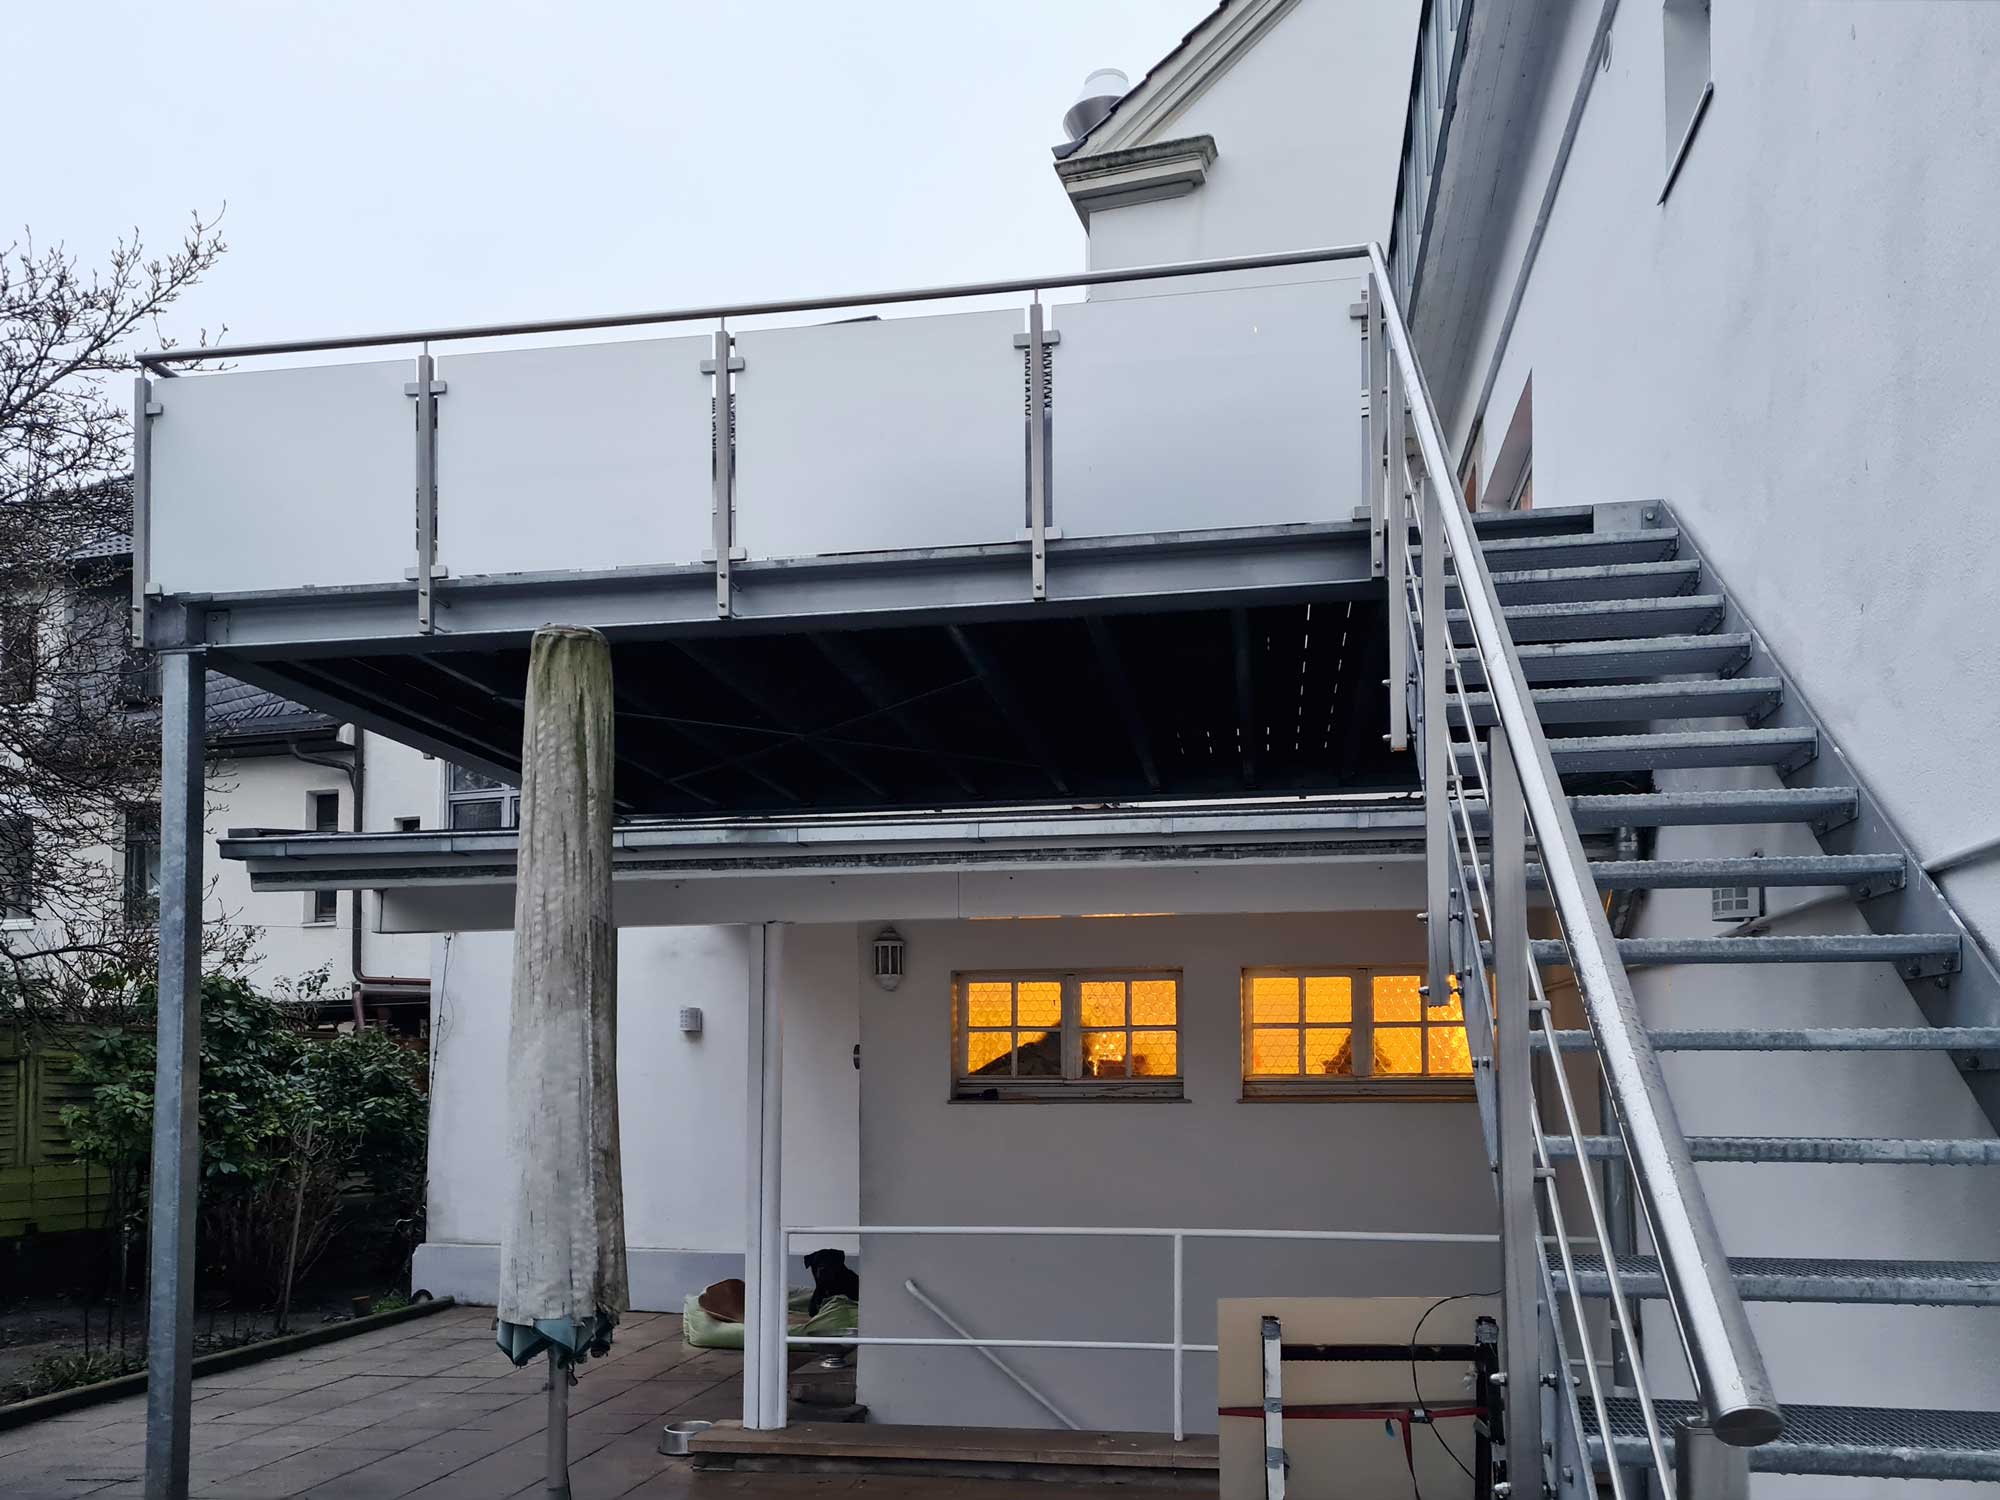 Anbau aus Stahl in Düsseldorf: Stahlkonstruktion mit Treppe, Edelstahlgeländer und Sicherheitsglas, gebaut und umgesetzt von der Edelstahlschlosserei Nappenfeld aus Mülheim